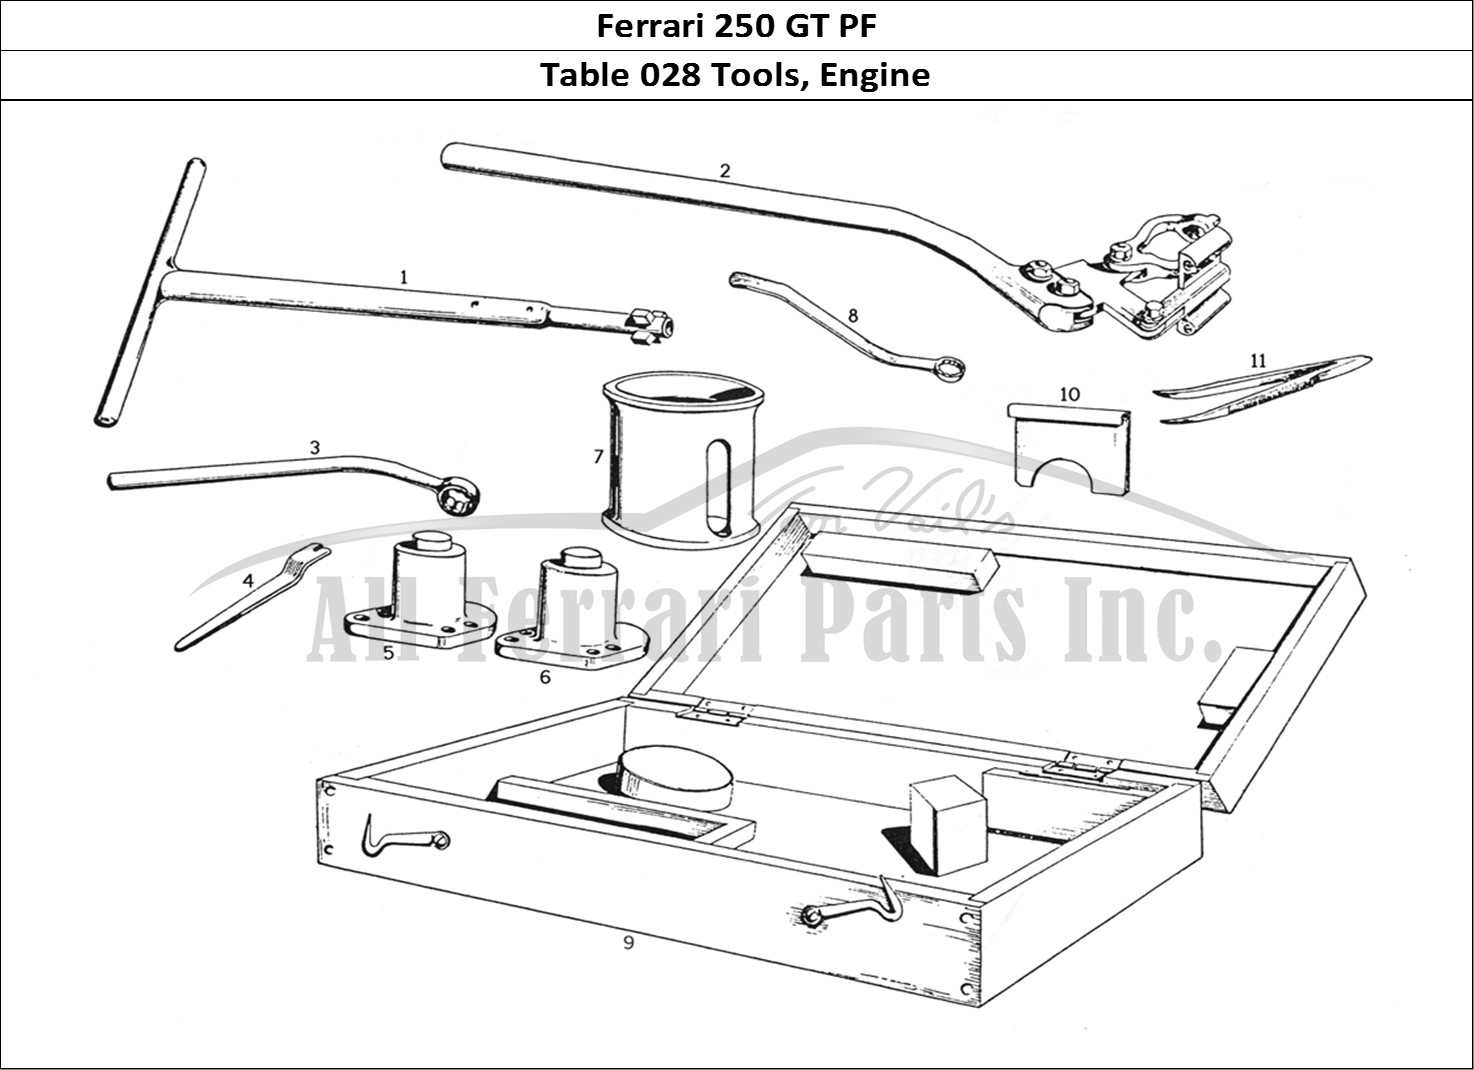 Ferrari Parts Ferrari 250 GTE (1957) Page 028 Engine Tools